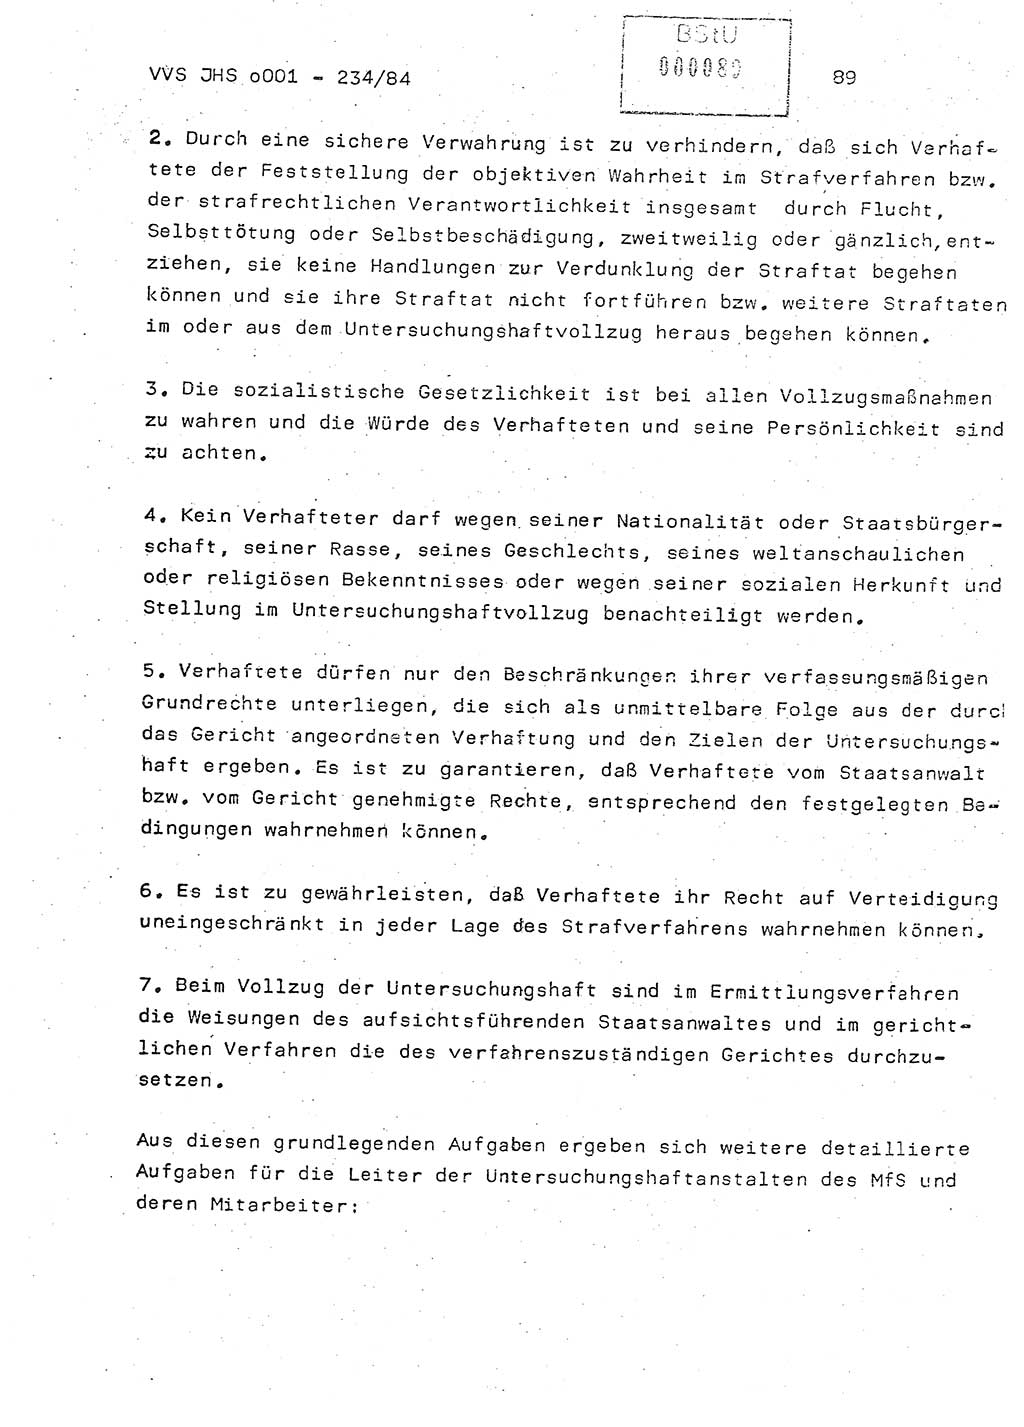 Dissertation Oberst Siegfried Rataizick (Abt. ⅩⅣ), Oberstleutnant Volkmar Heinz (Abt. ⅩⅣ), Oberstleutnant Werner Stein (HA Ⅸ), Hauptmann Heinz Conrad (JHS), Ministerium für Staatssicherheit (MfS) [Deutsche Demokratische Republik (DDR)], Juristische Hochschule (JHS), Vertrauliche Verschlußsache (VVS) o001-234/84, Potsdam 1984, Seite 89 (Diss. MfS DDR JHS VVS o001-234/84 1984, S. 89)